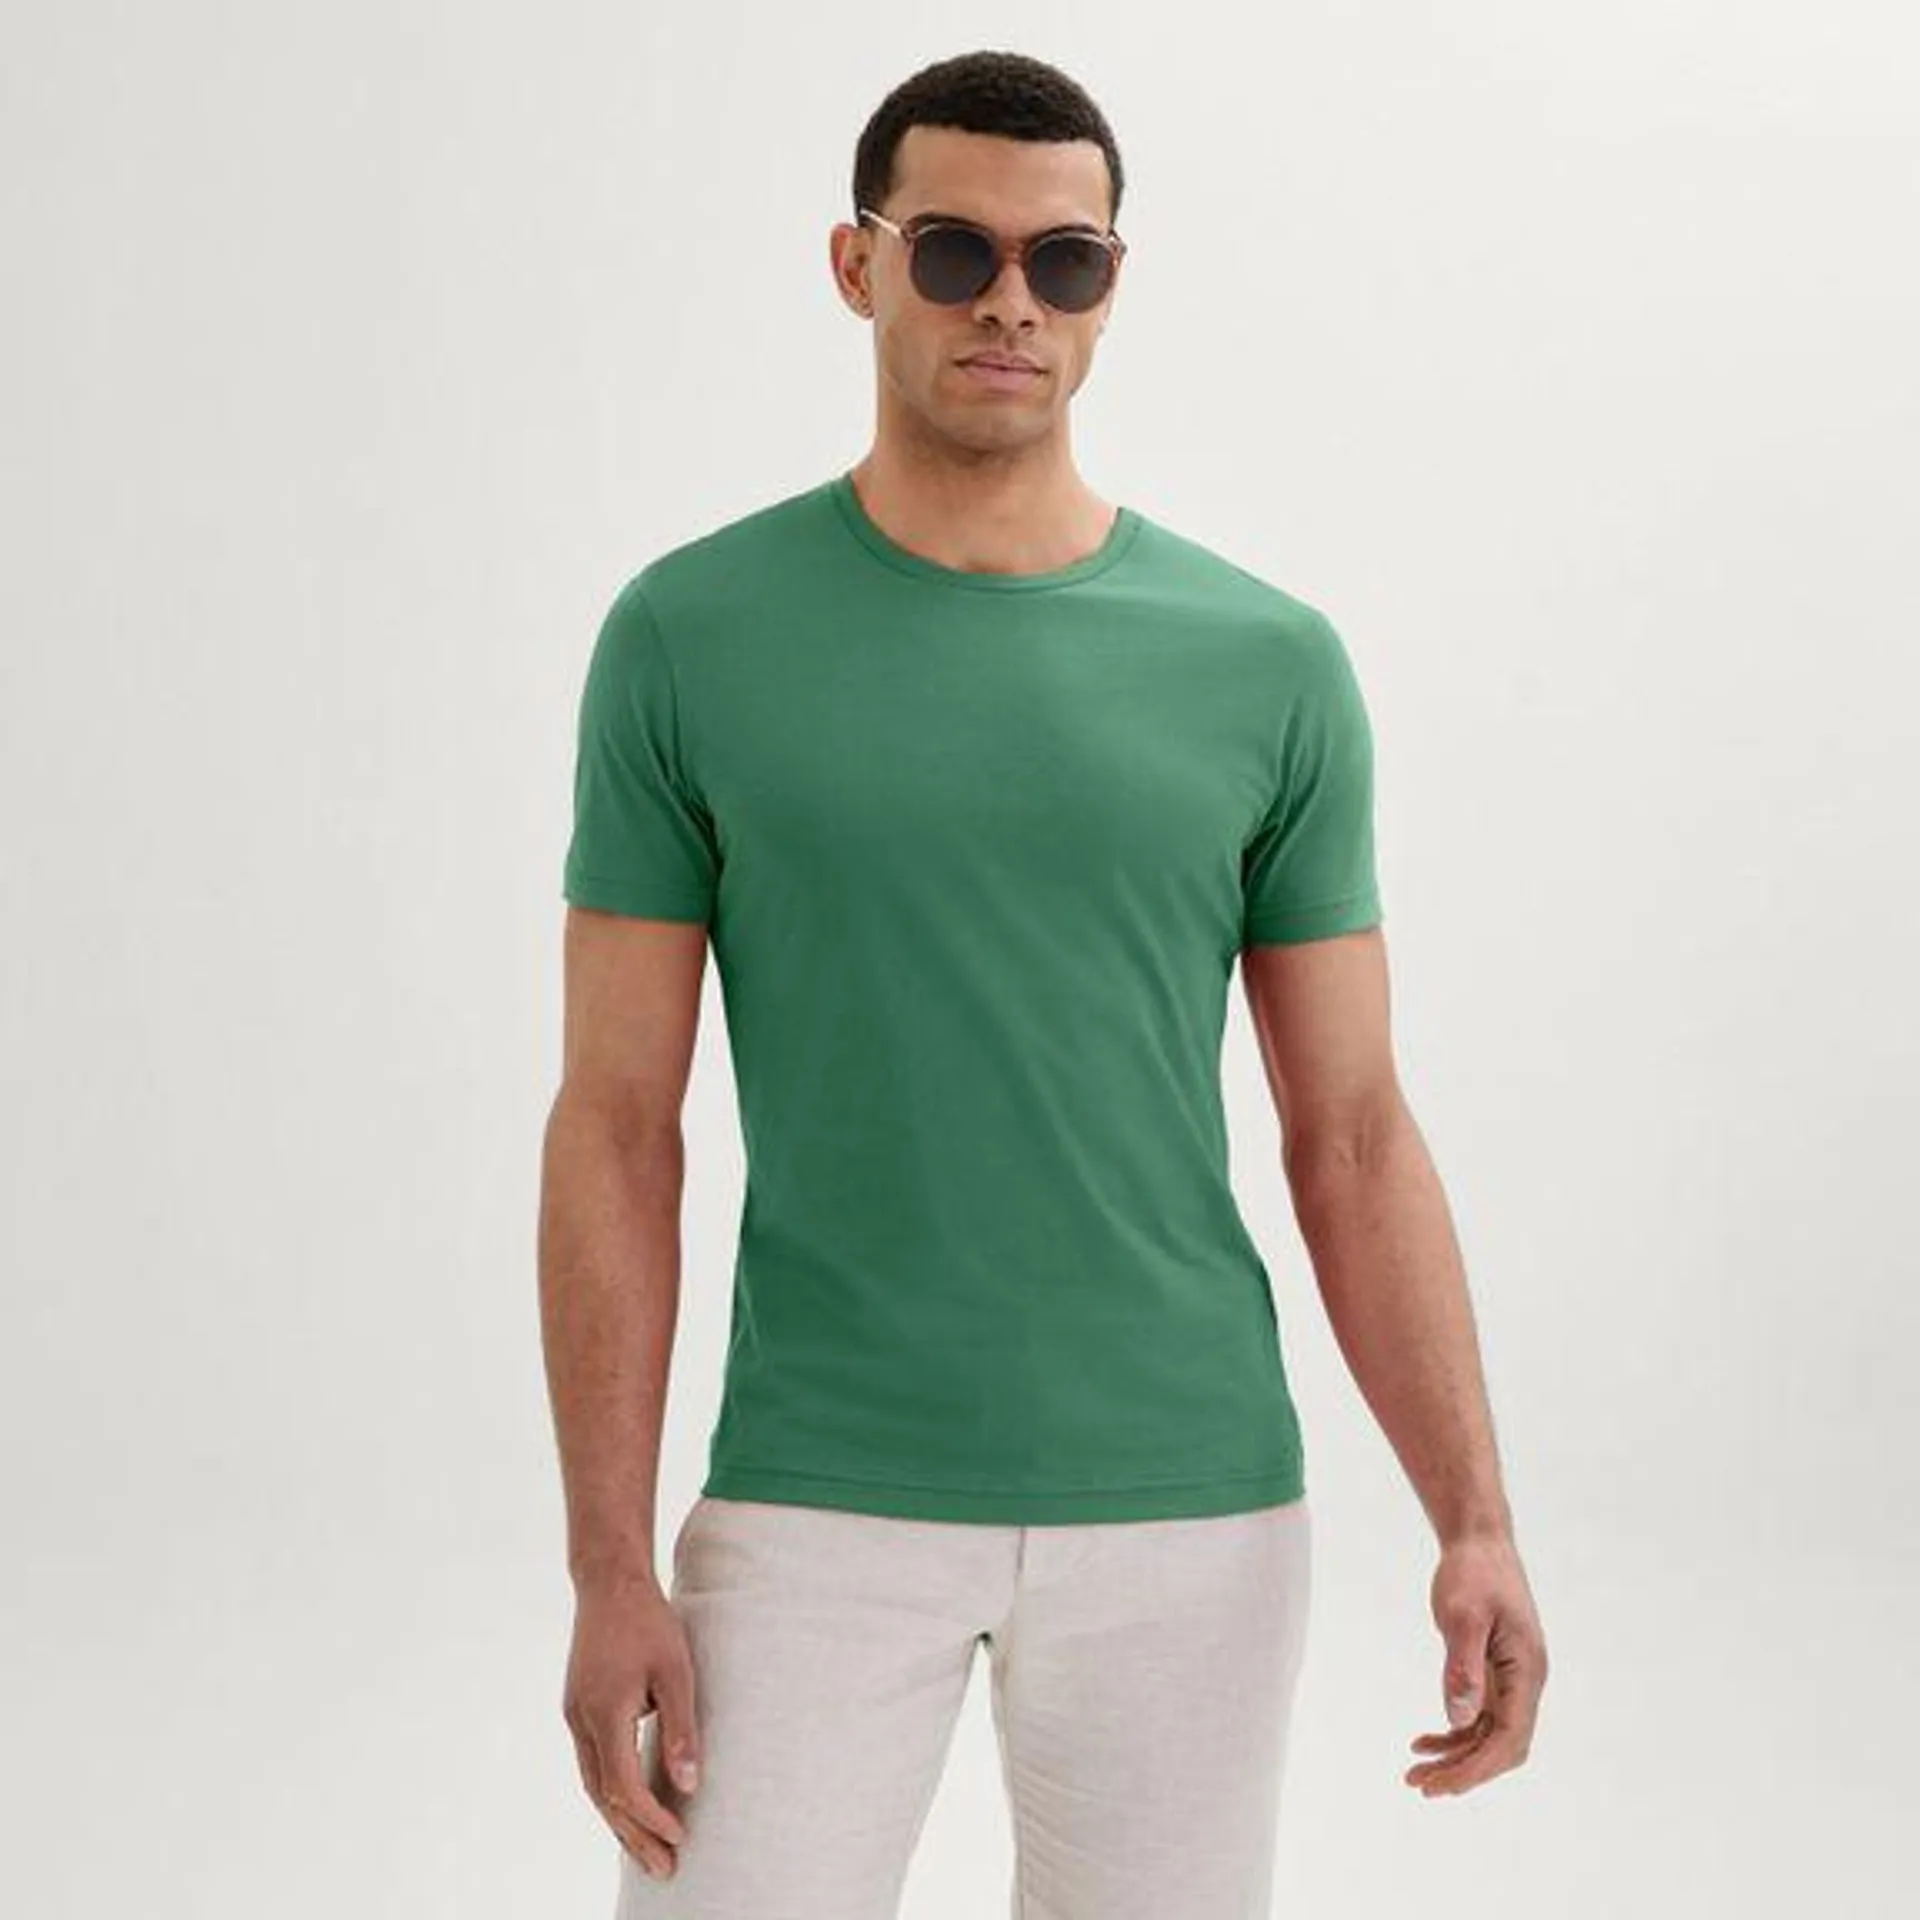 Pine green t-shirt